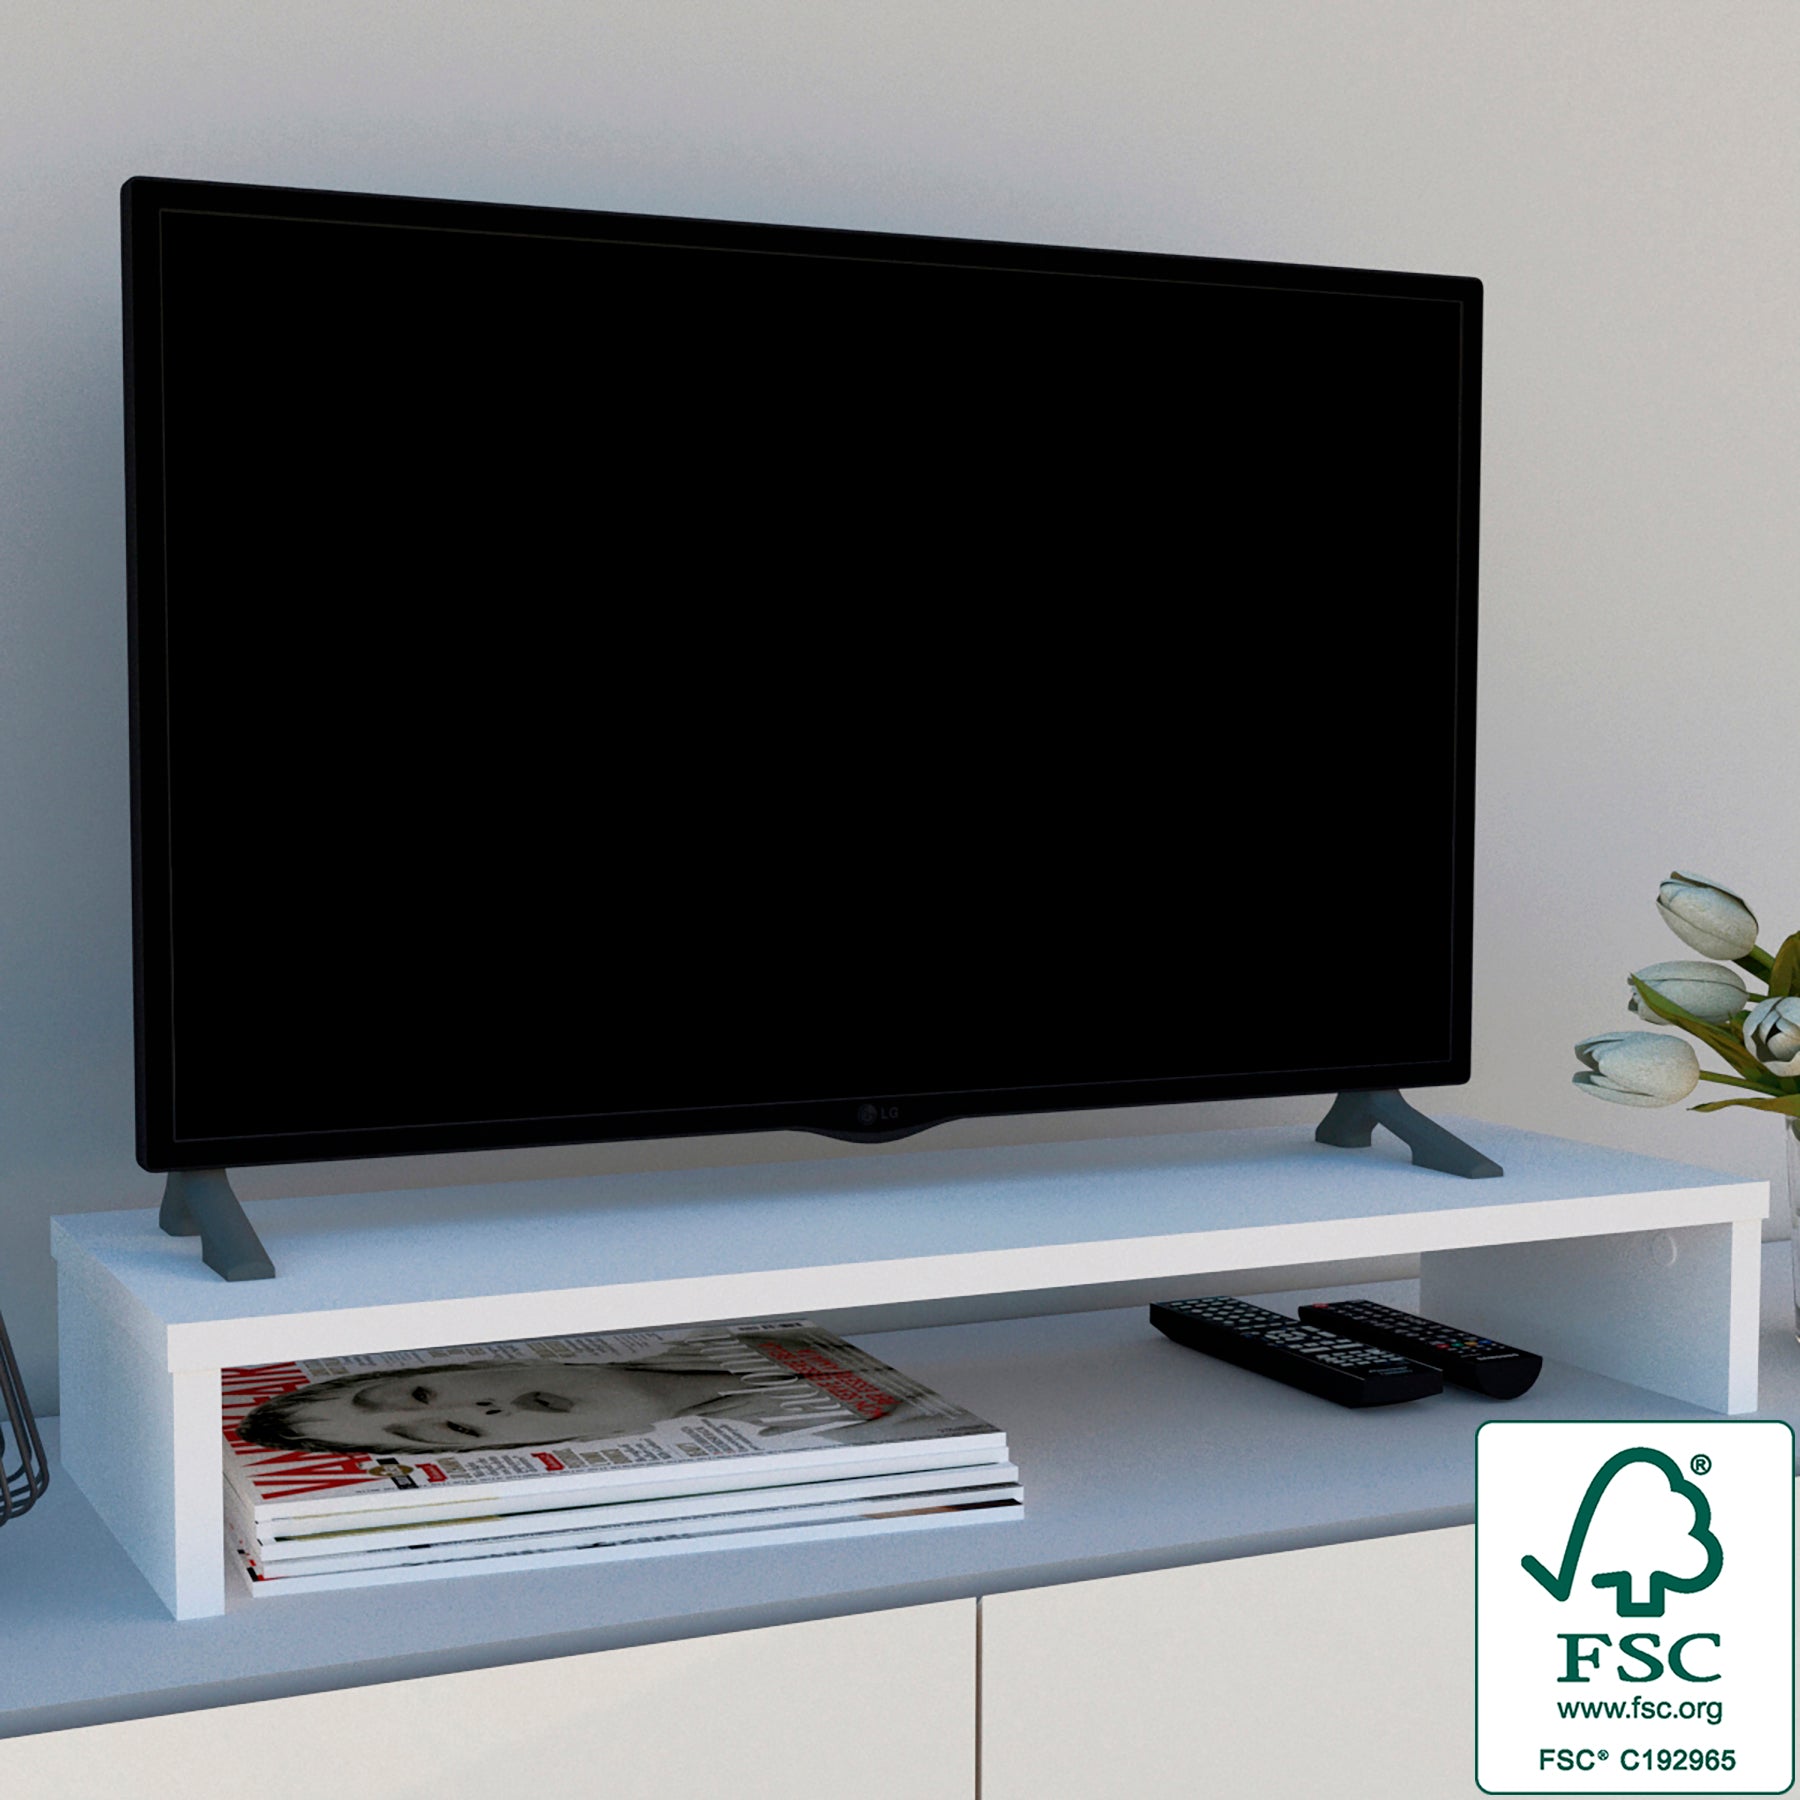 Soporte Monitor, Elevador TV de Madera FSC®. HENOR. 62x26.5x12 cm. Soporta  50 Kg. Roble Stel